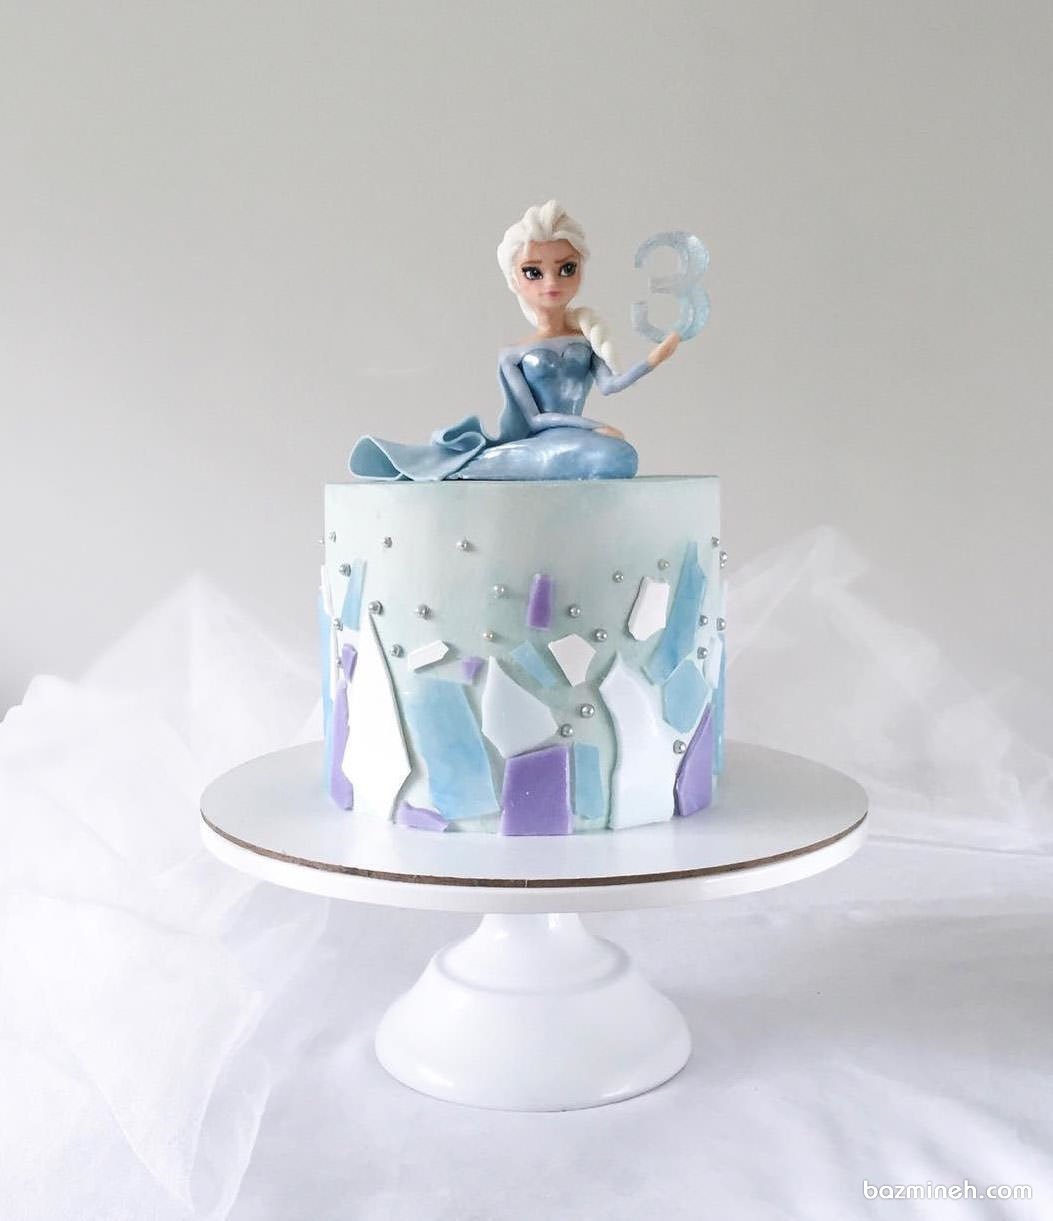 مینی کیک رویایی جشن تولد دخترونه با تم پرنسس فروزن (Frozen)